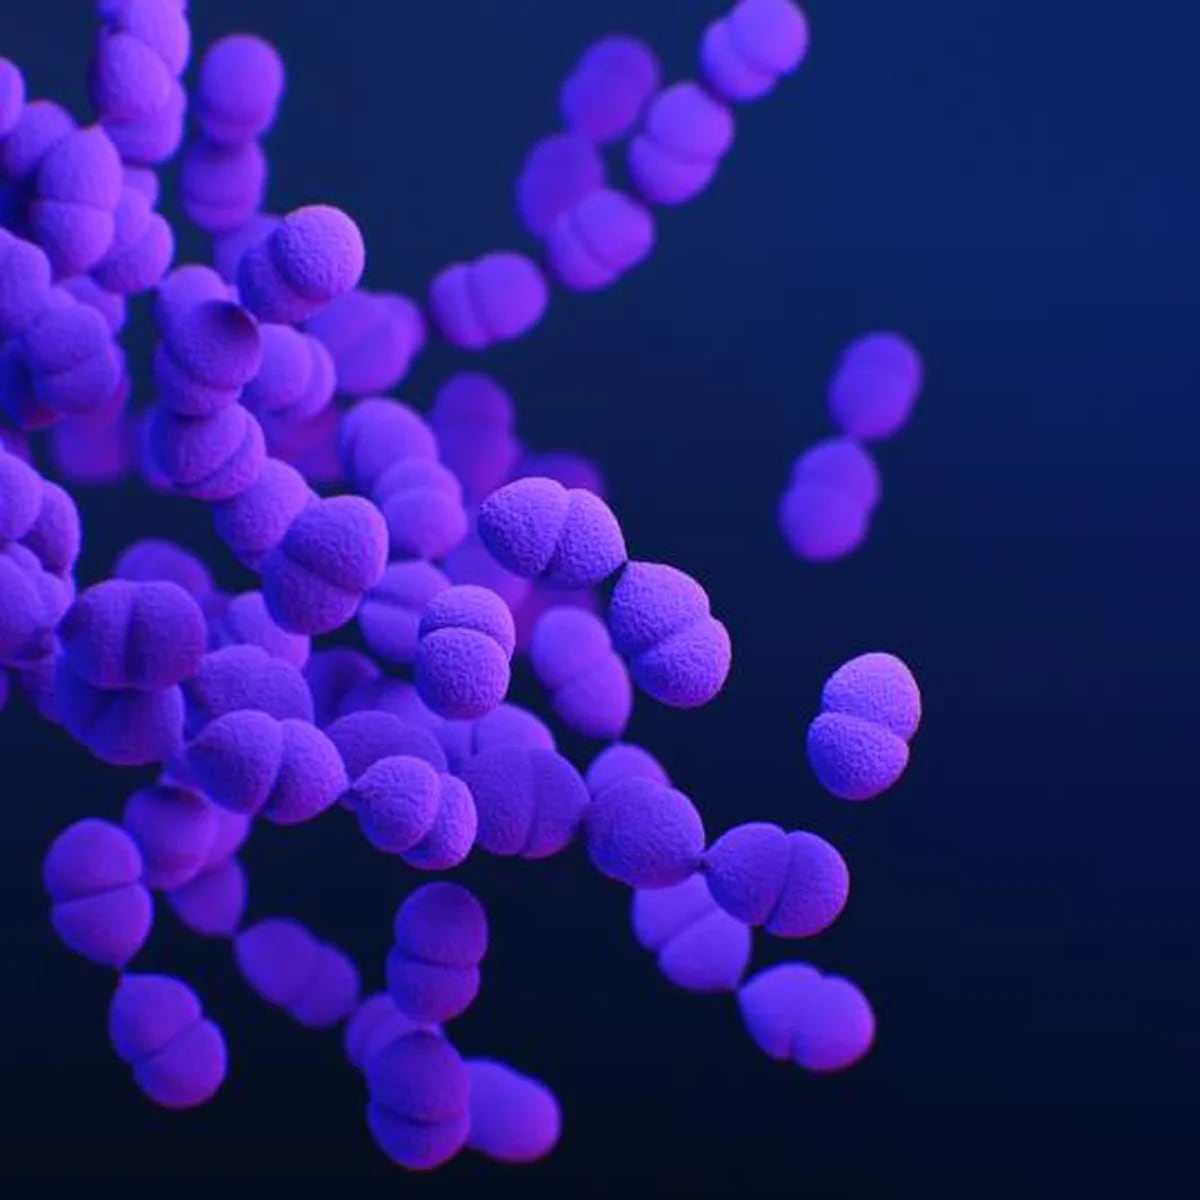 Investigadores detectan en estropajos de cocina unas bacterias que luchan  contra la resistencia a antibióticos - Noticias de enfermería y salud